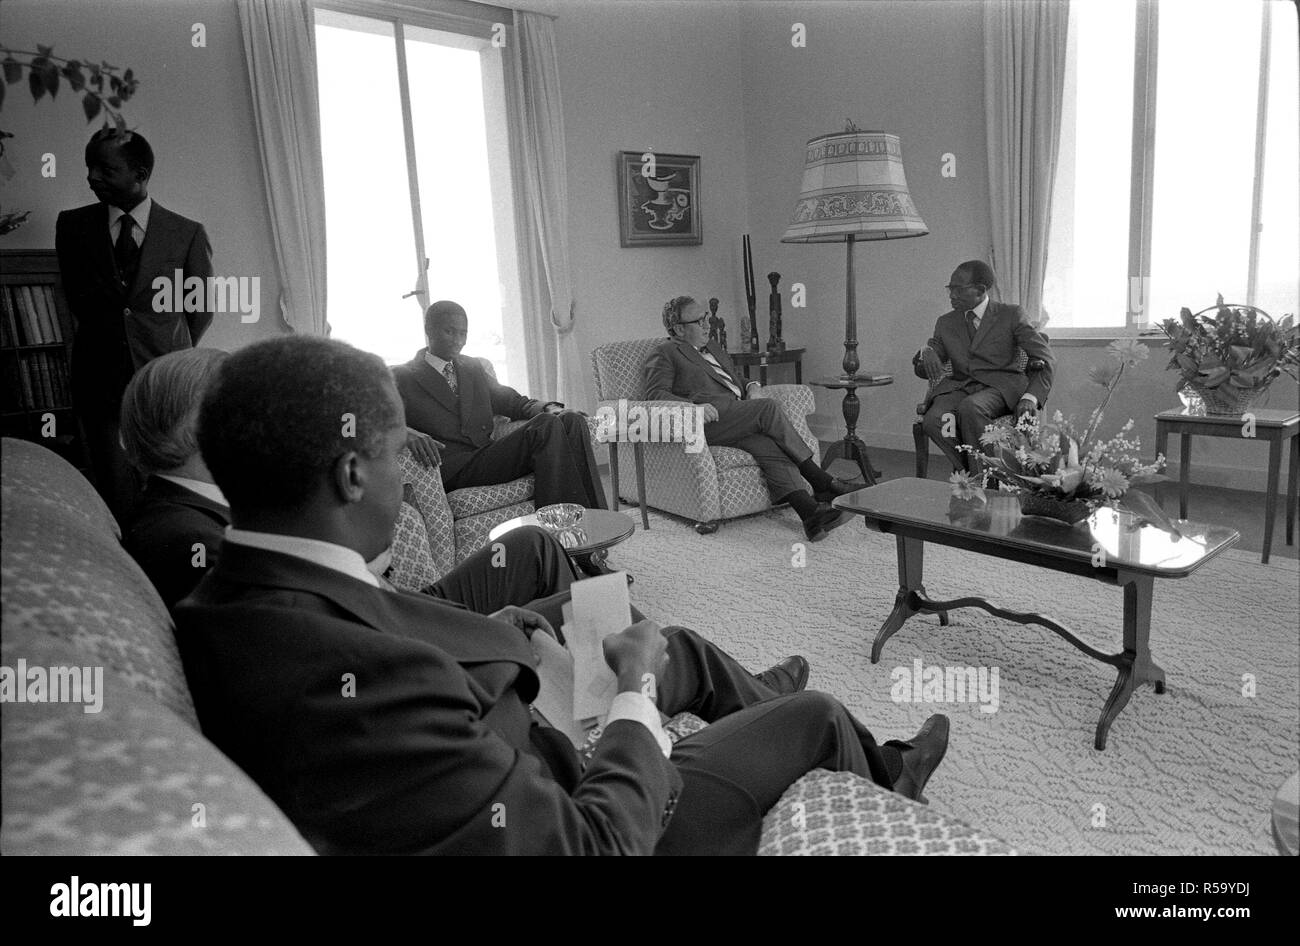 1976, 1 mai - le palais présidentiel - Dakar, Sénégal (Afrique) - Henry Kissinger, Léopold Senghor, Autres - assis dans des chaises et sofas, parler - Le secrétaire d'État Voyage en Afrique ; réunion avec le Président du Sénégal Léopold Senghor Banque D'Images